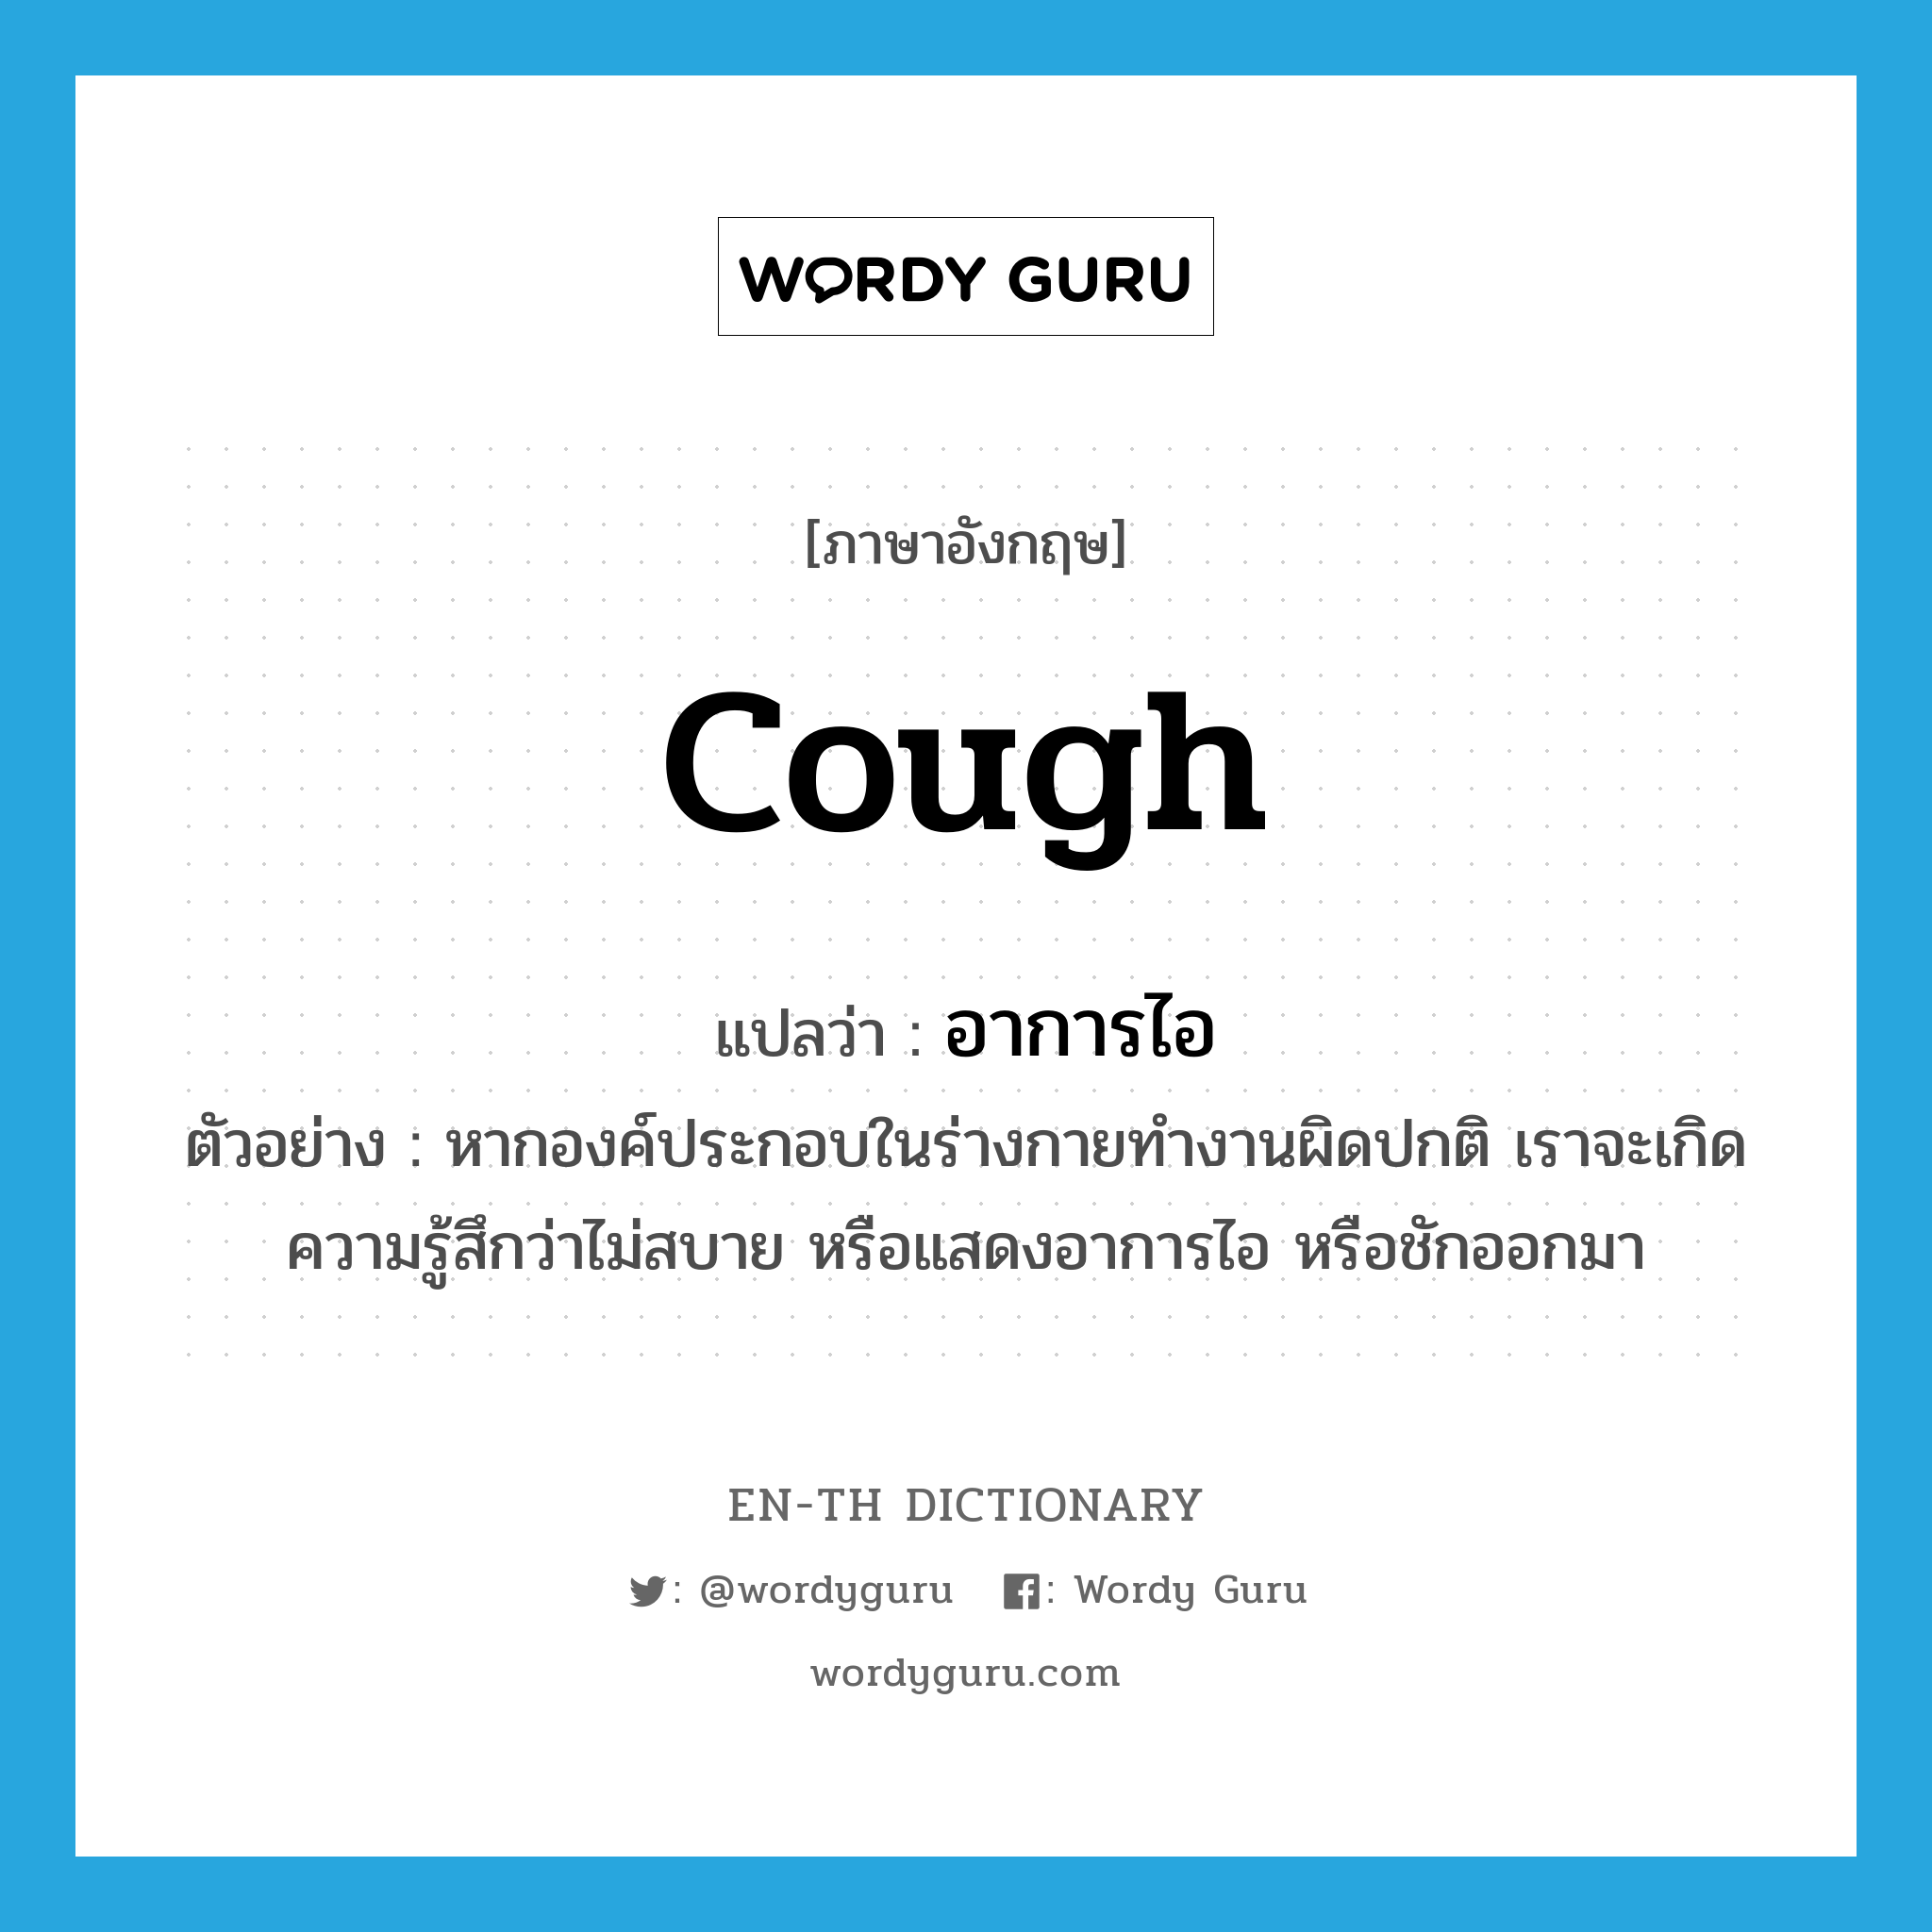 cough แปลว่า?, คำศัพท์ภาษาอังกฤษ cough แปลว่า อาการไอ ประเภท N ตัวอย่าง หากองค์ประกอบในร่างกายทำงานผิดปกติ เราจะเกิดความรู้สึกว่าไม่สบาย หรือแสดงอาการไอ หรือชักออกมา หมวด N